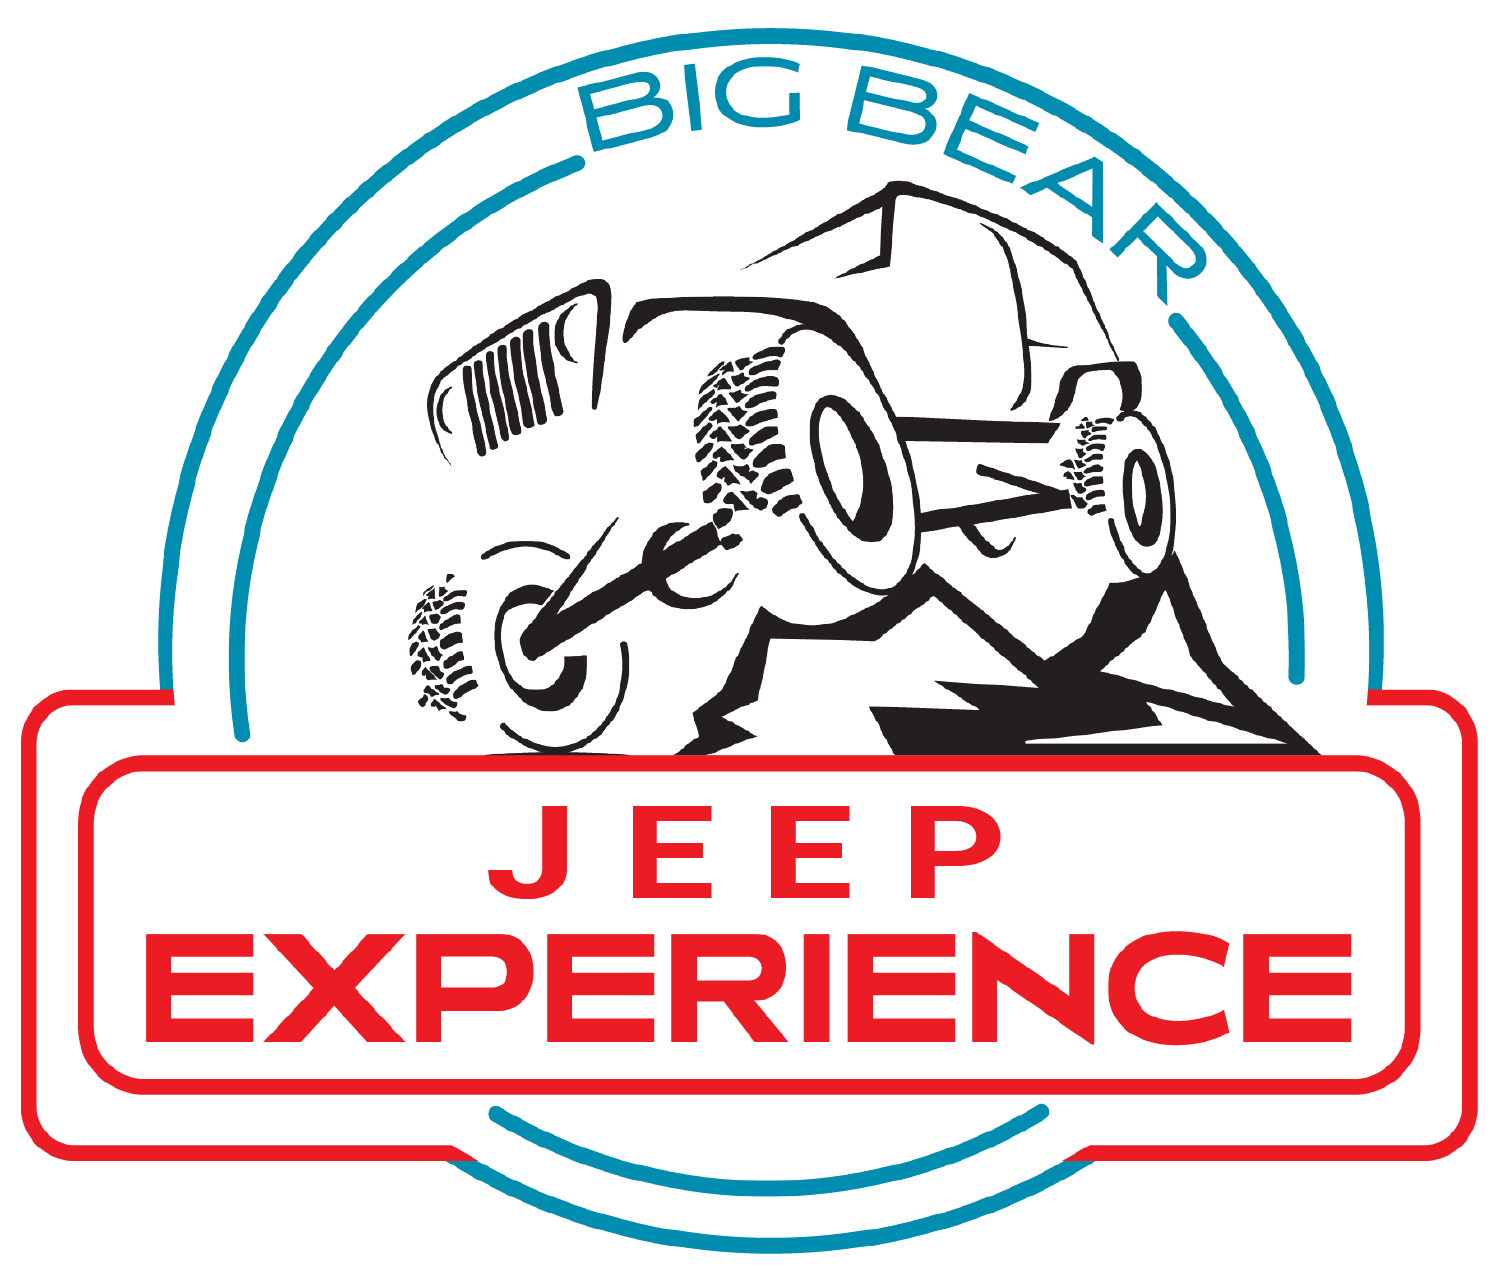 Big Bear Jeep Experience Logo Mark